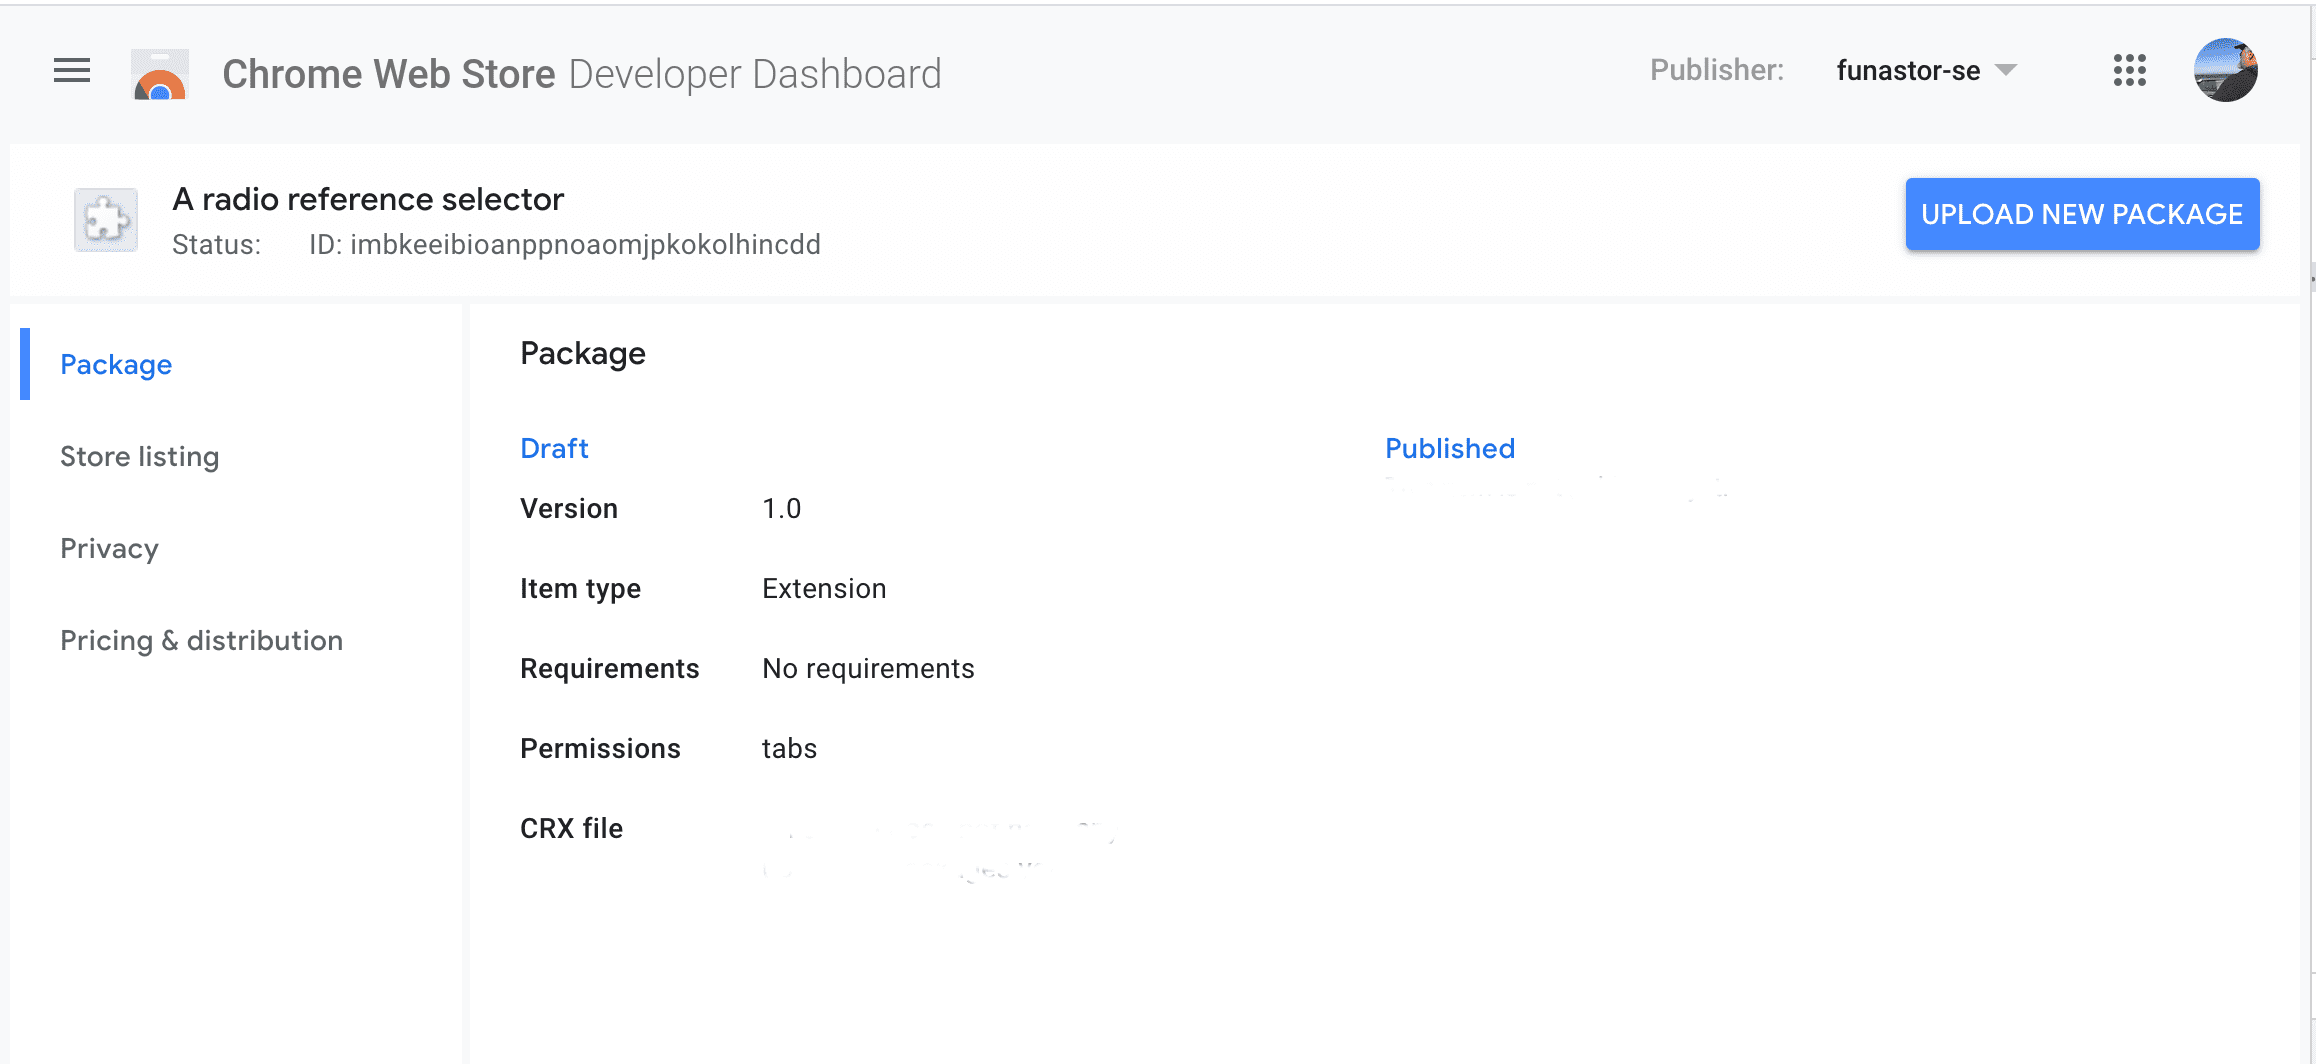 Zrzut ekranu przedstawiający kartę pakietu dla deweloperów w Chrome Web Store dla produktu